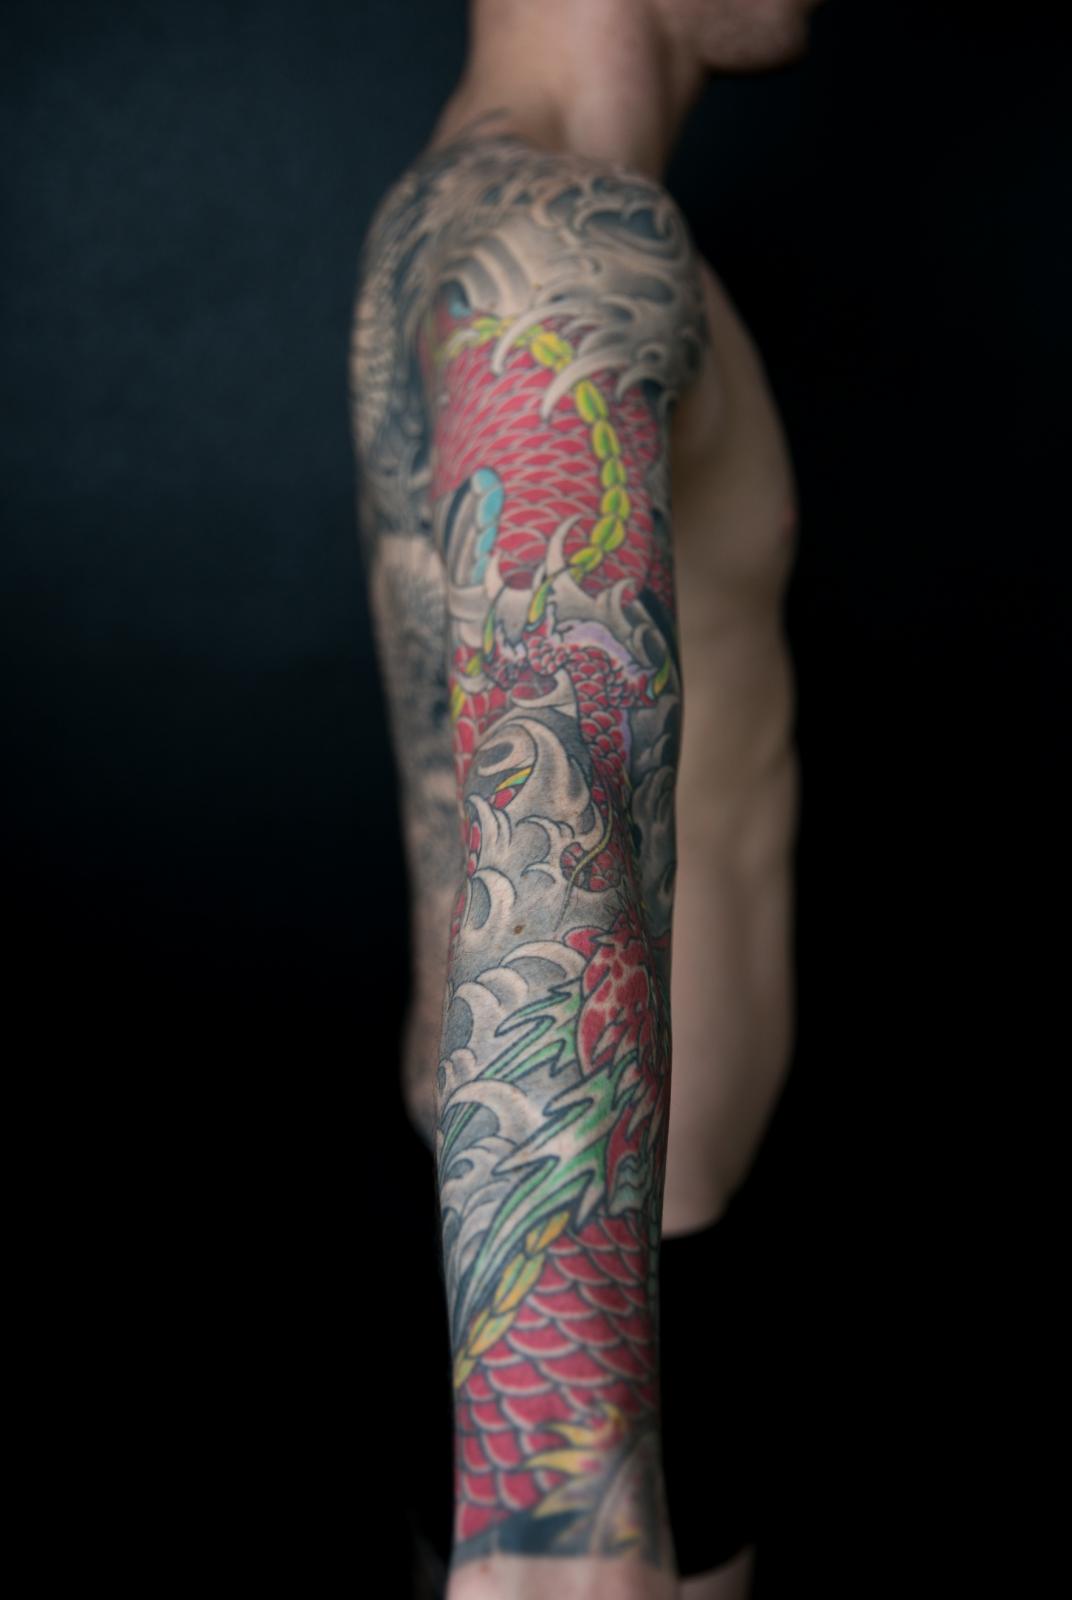 02 heafy tattoos 2 Photo by Ashley Heafy